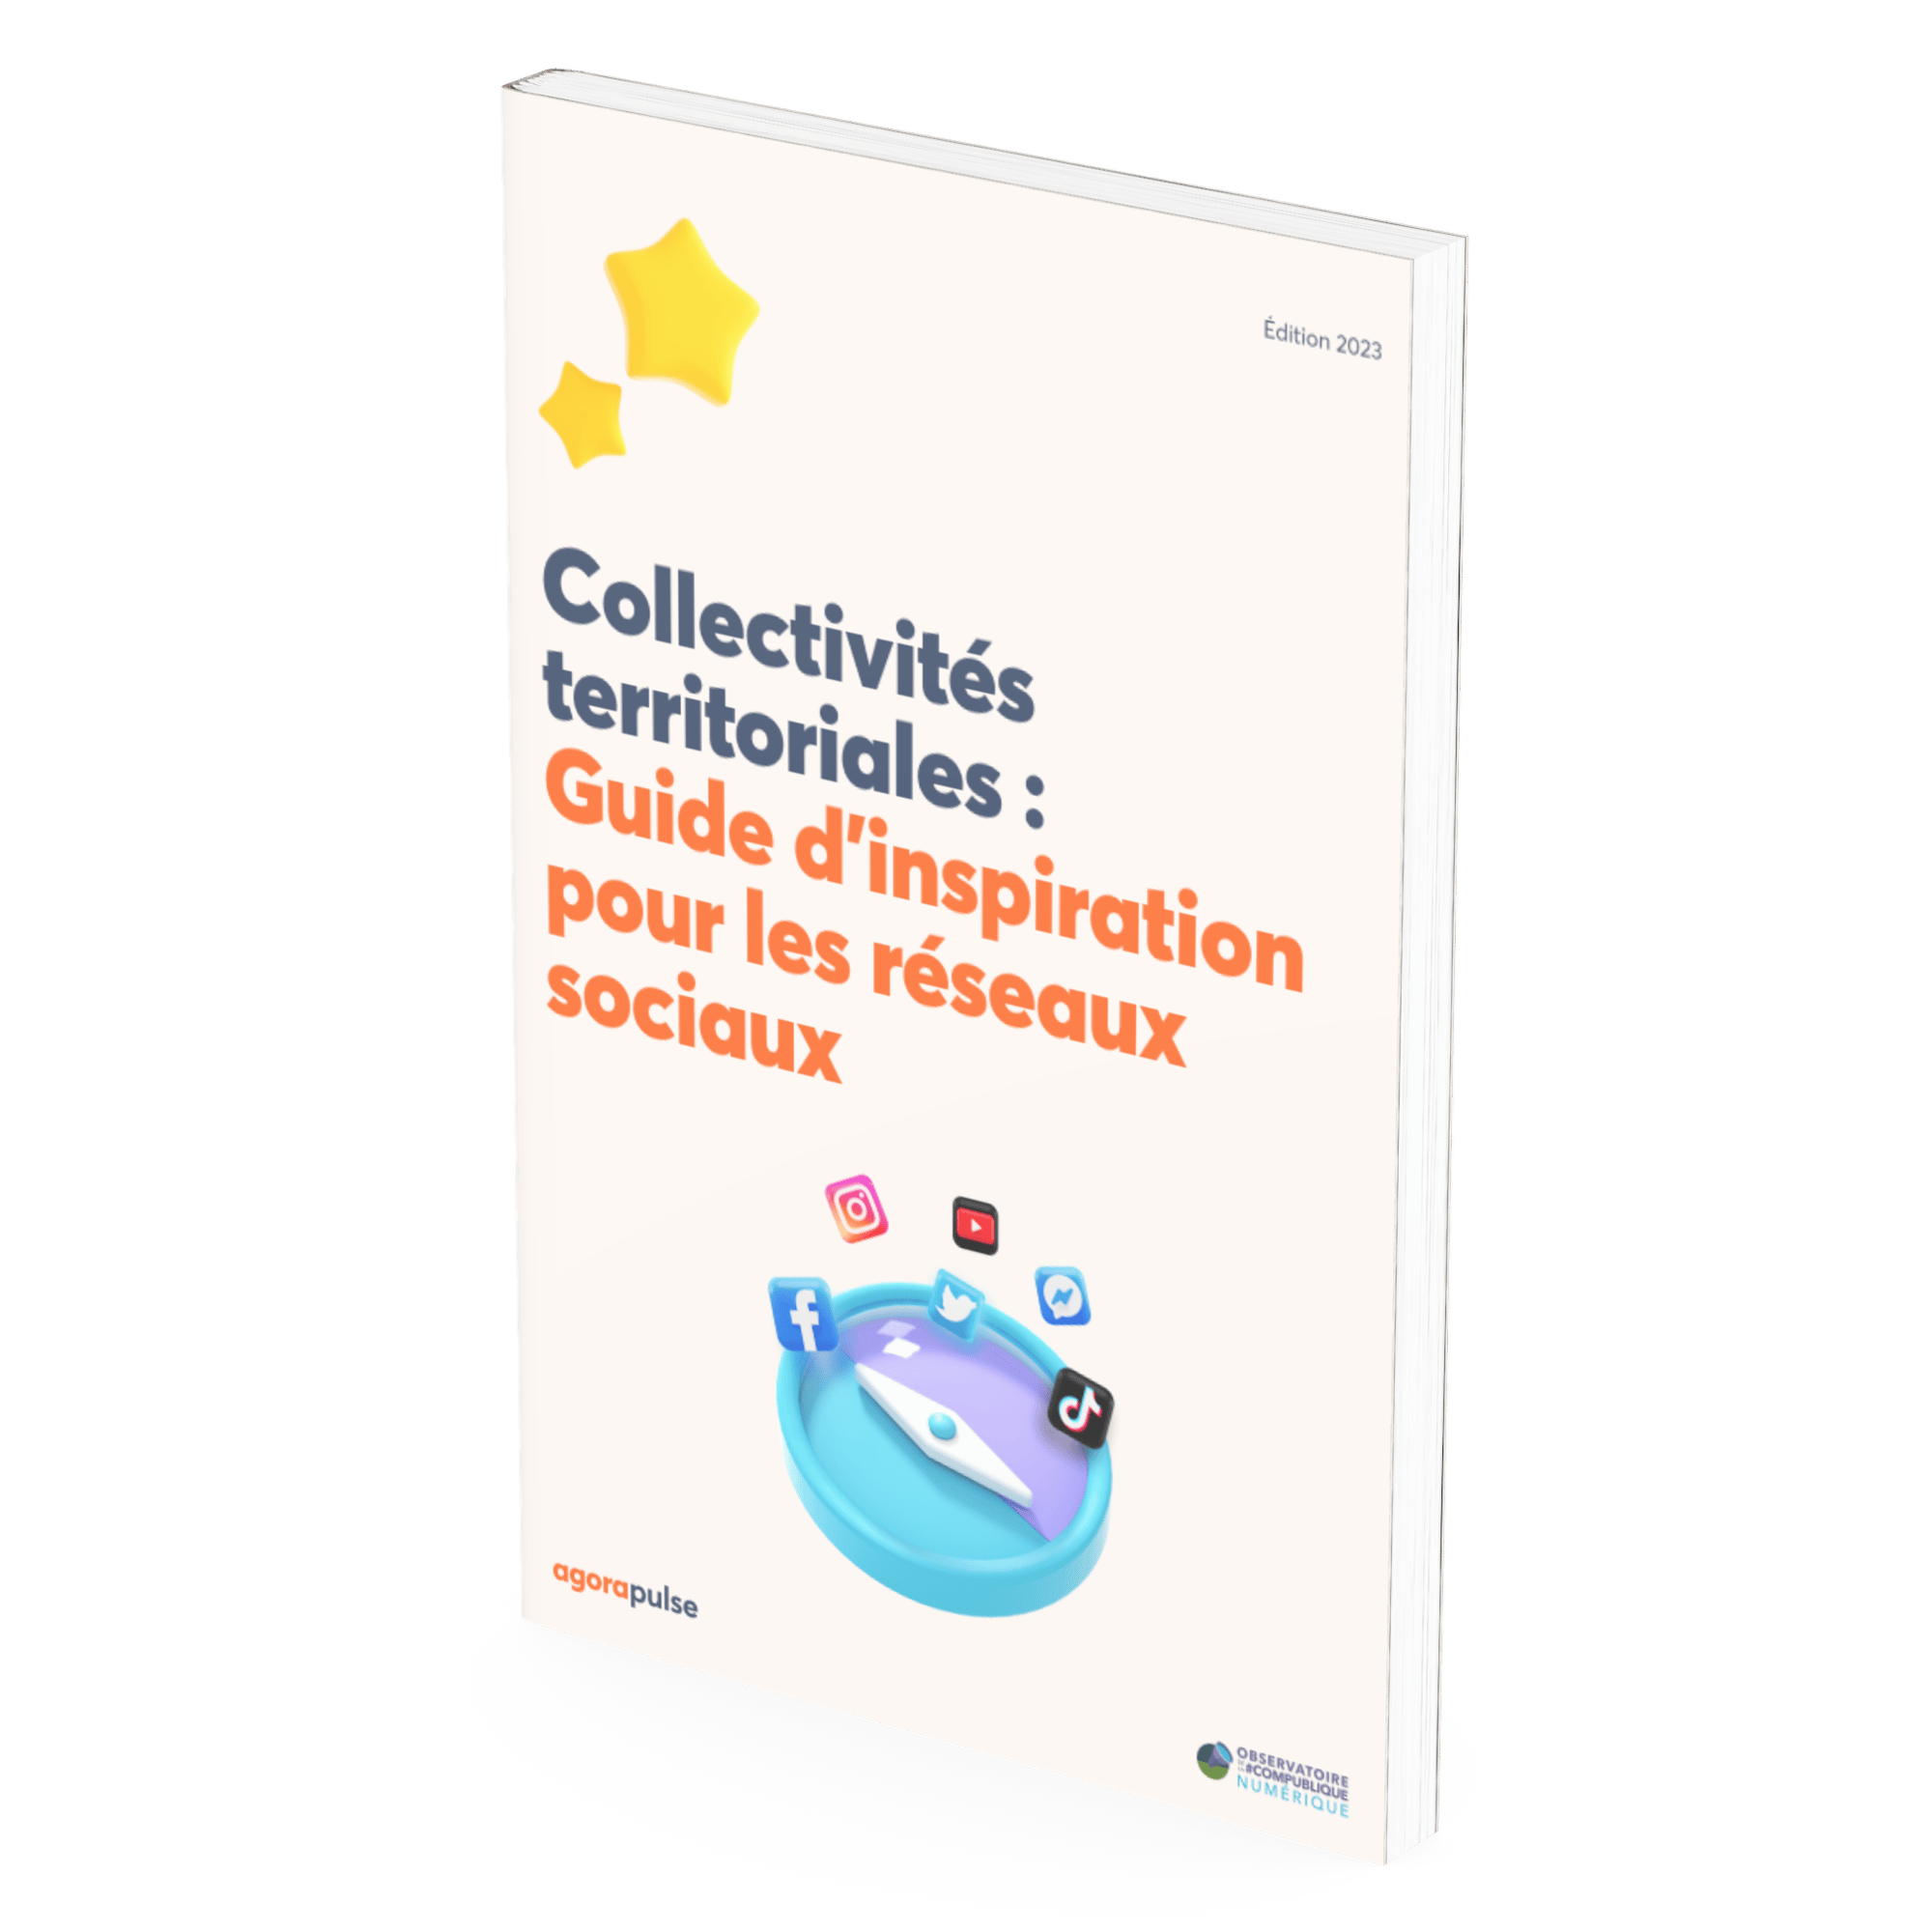 Collectivités territoriales - Guide d’inspiration pour les réseaux sociaux - mockup-2